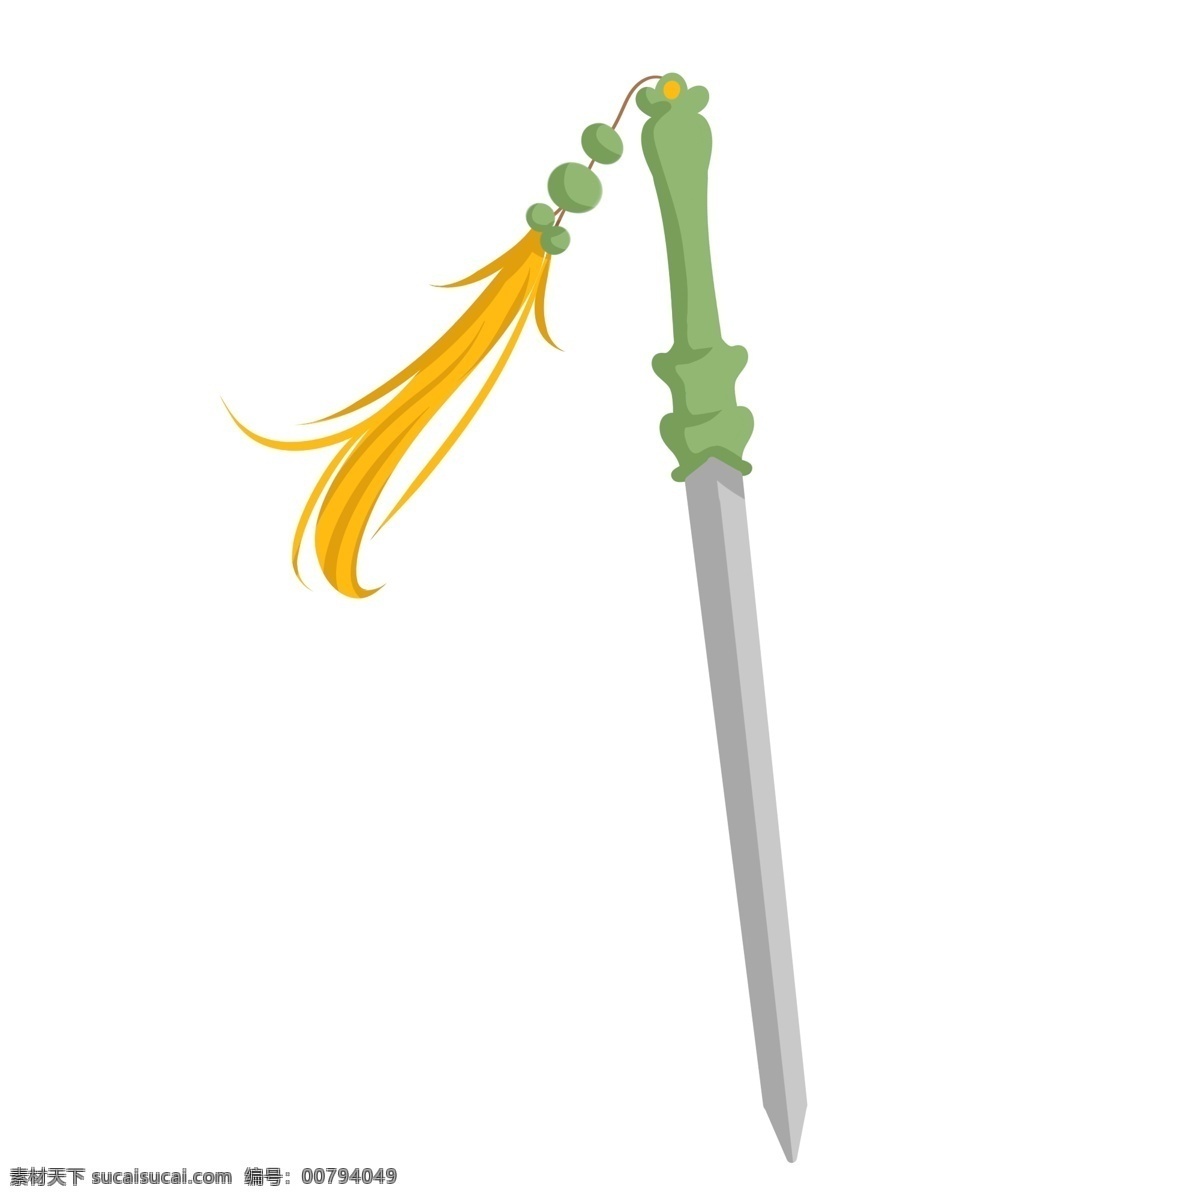 手绘 锋利 宝剑 插画 锋利的宝剑 卡通插画 黄色的吊穗 绿色的剑把 长长的宝剑 手绘宝剑插画